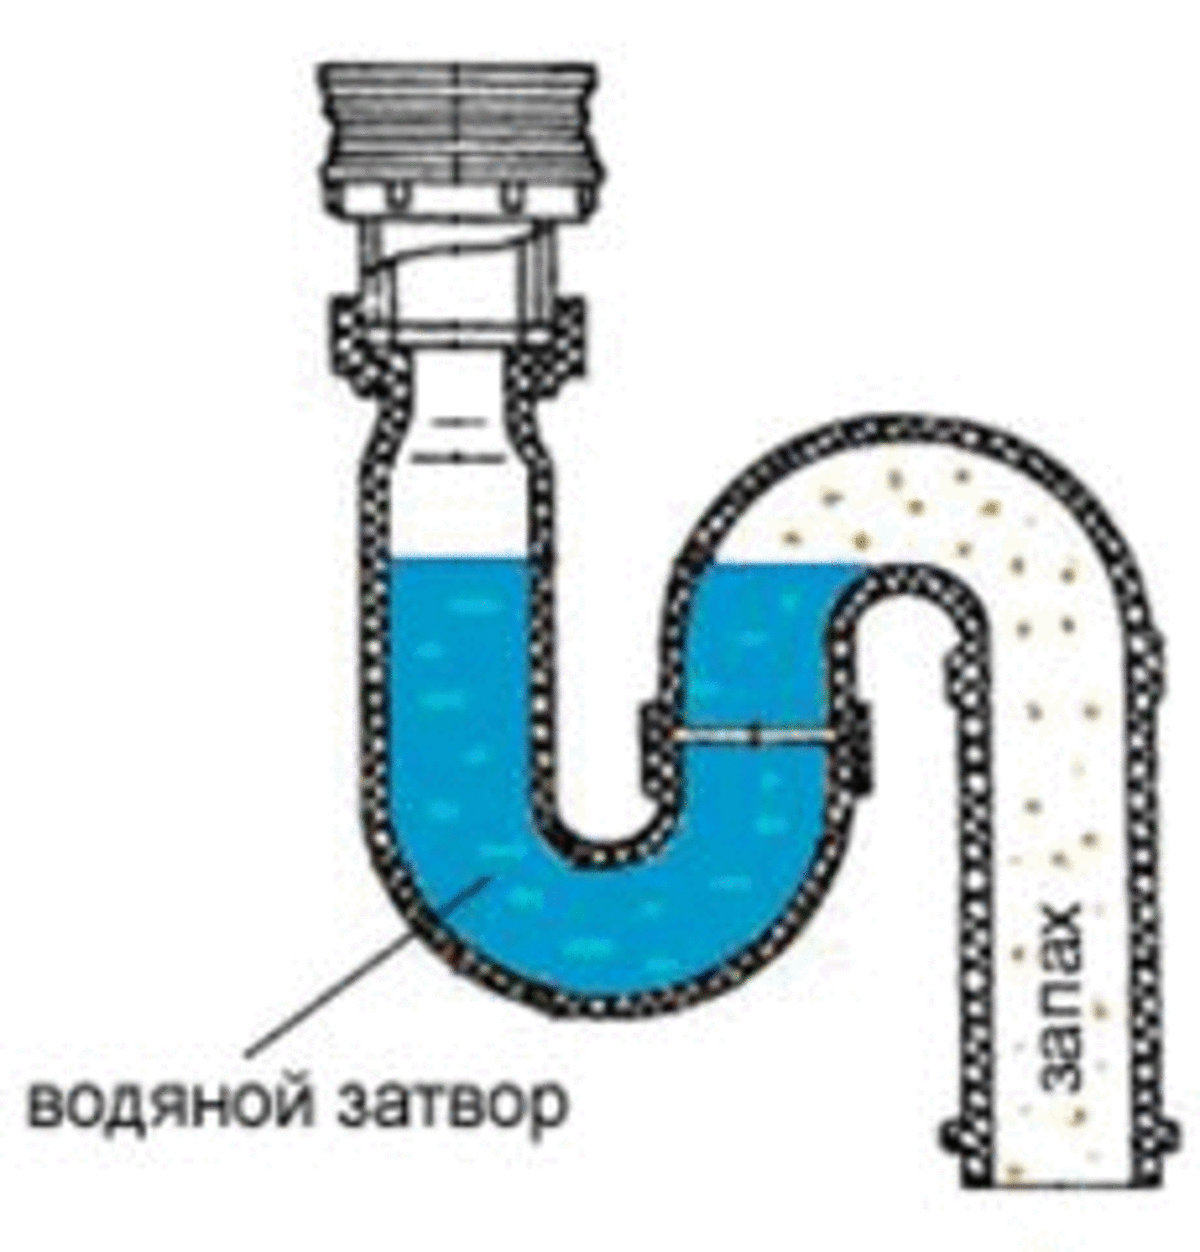 Гидрозатвор для канализации: назначение, разновидности и изготовление своими руками